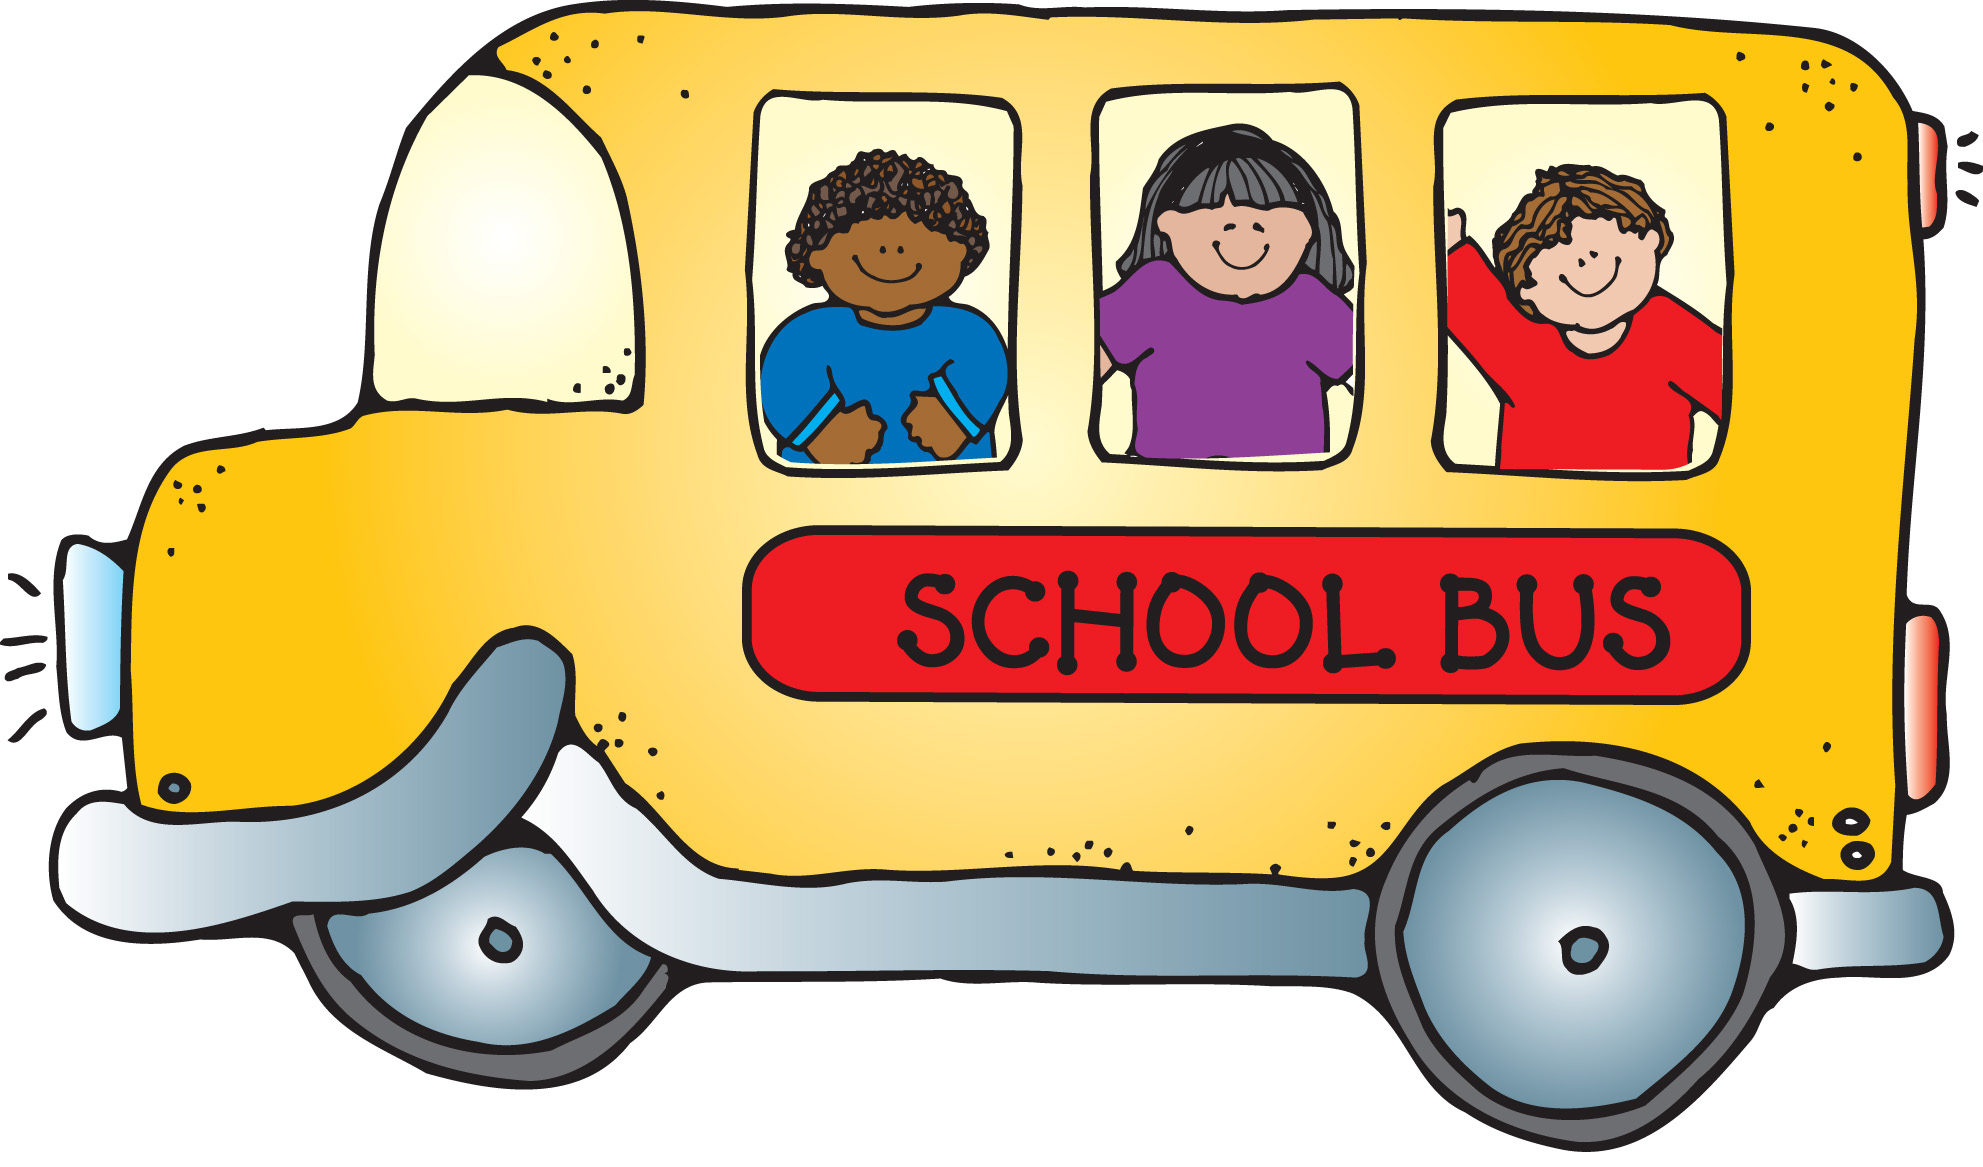 School bus school clipart